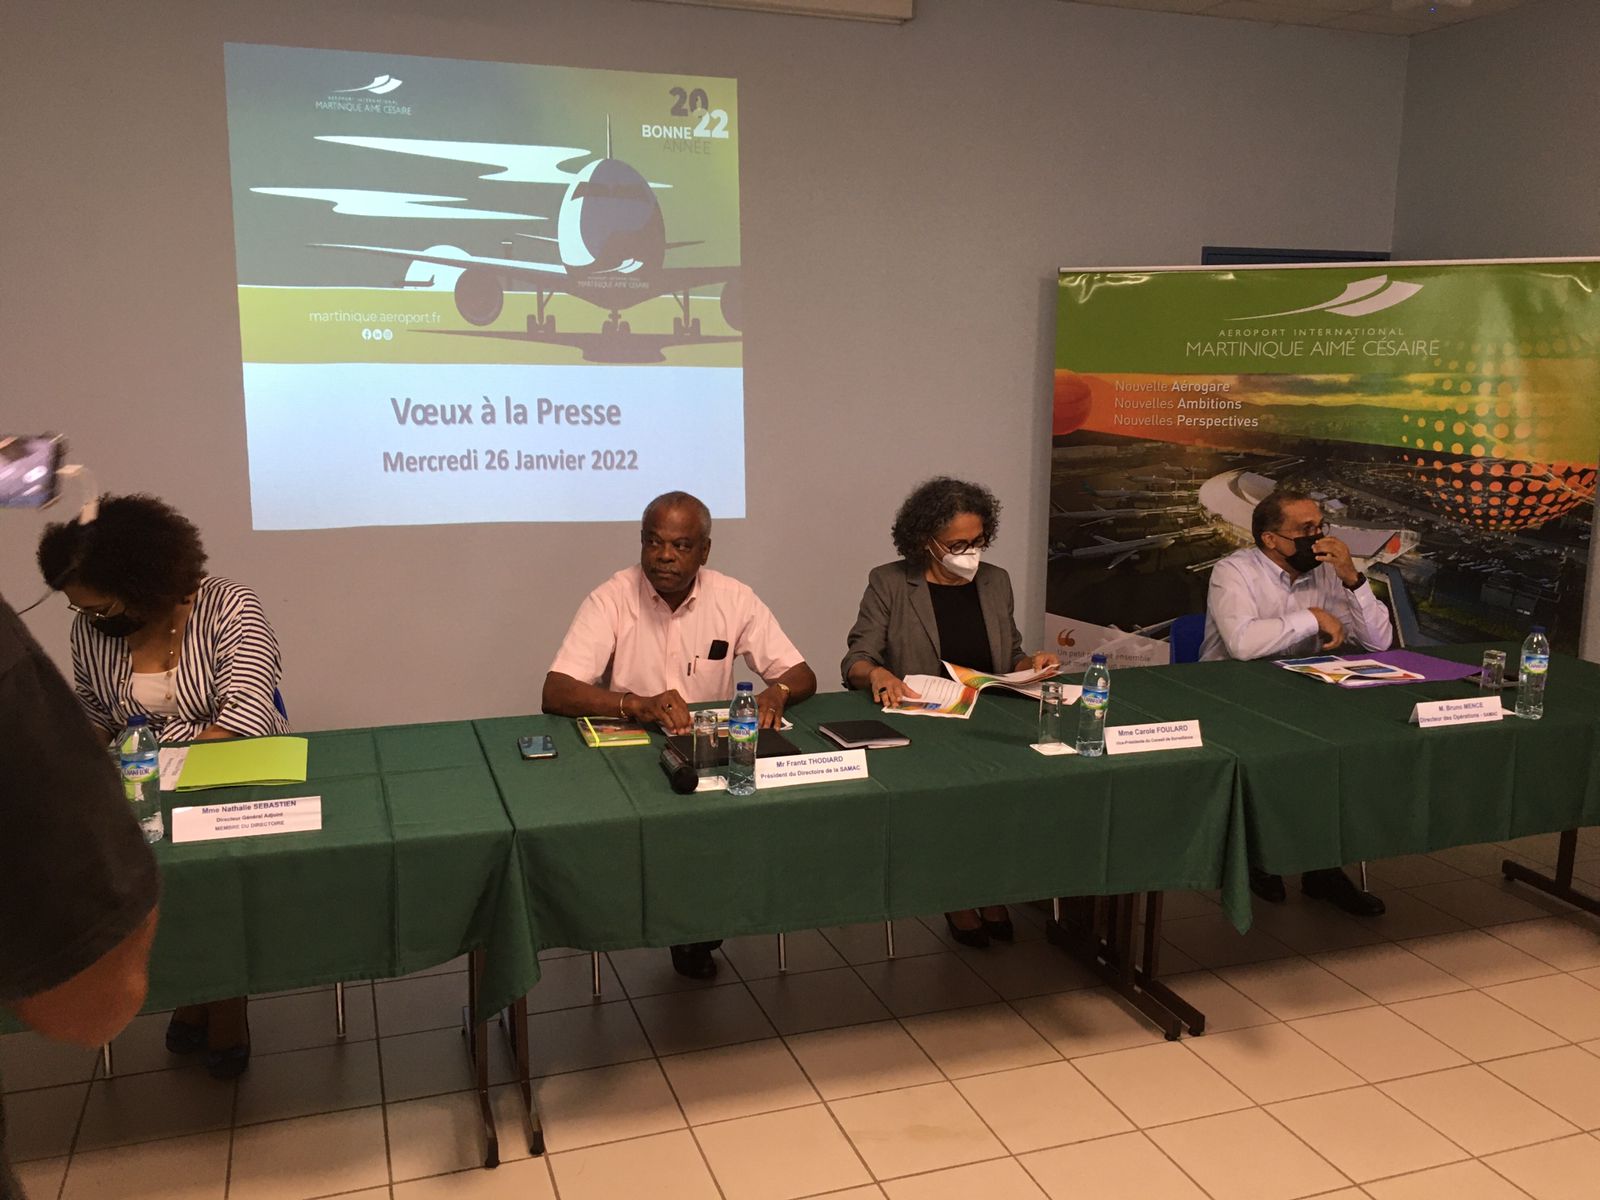     Aéroport Martinique Aimé Césaire: bilan 2021 et perspectives pour 2022

